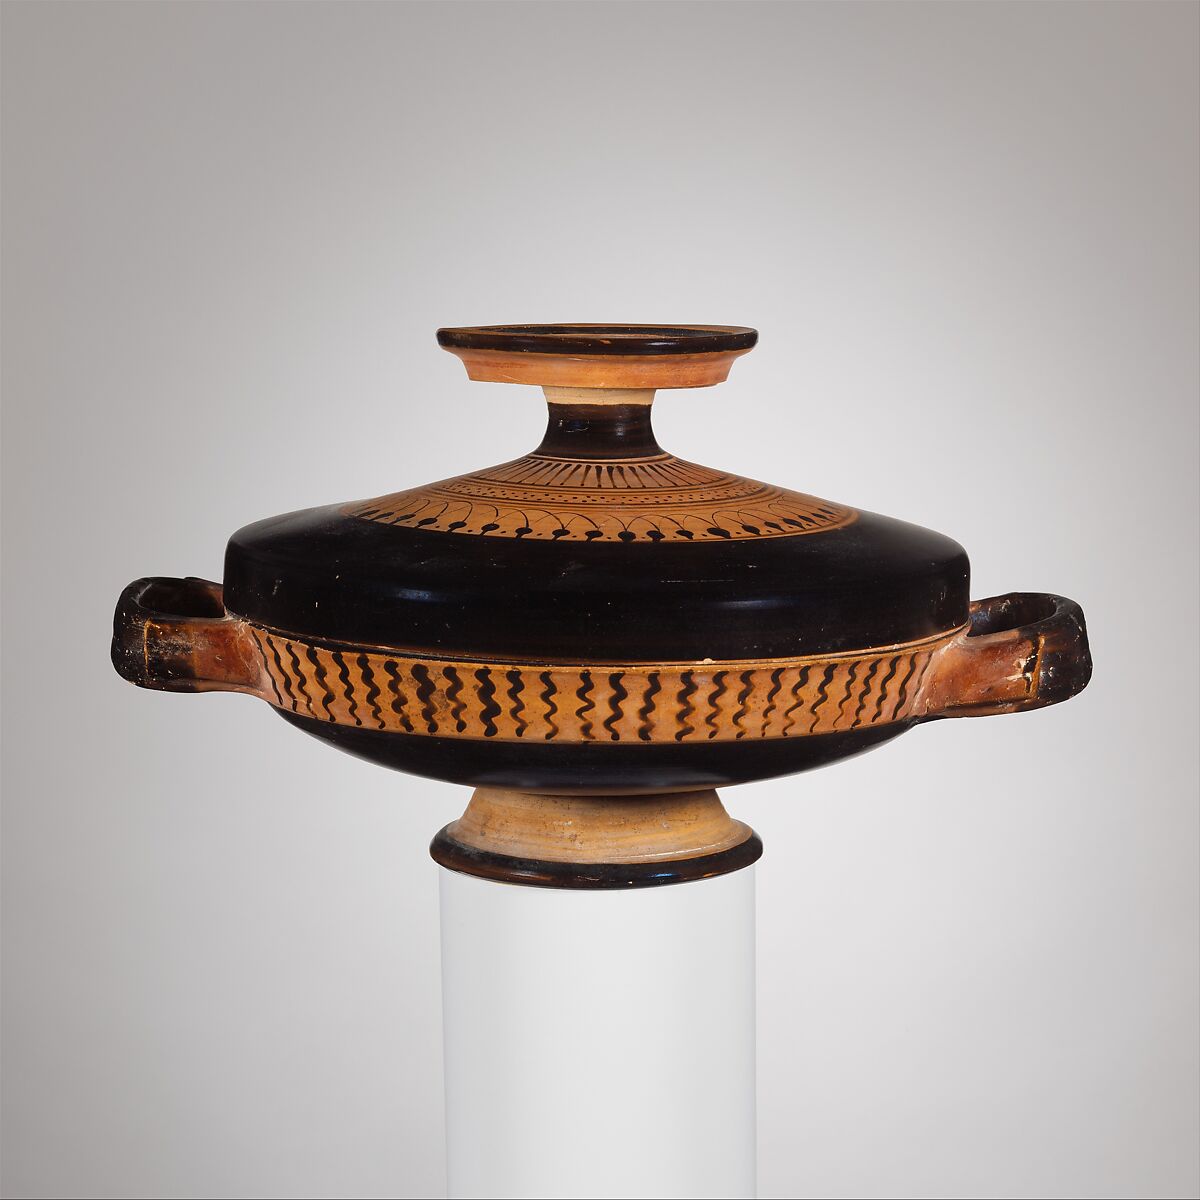 Terracotta lekanis with lid (dish), Terracotta, Greek, Attic 